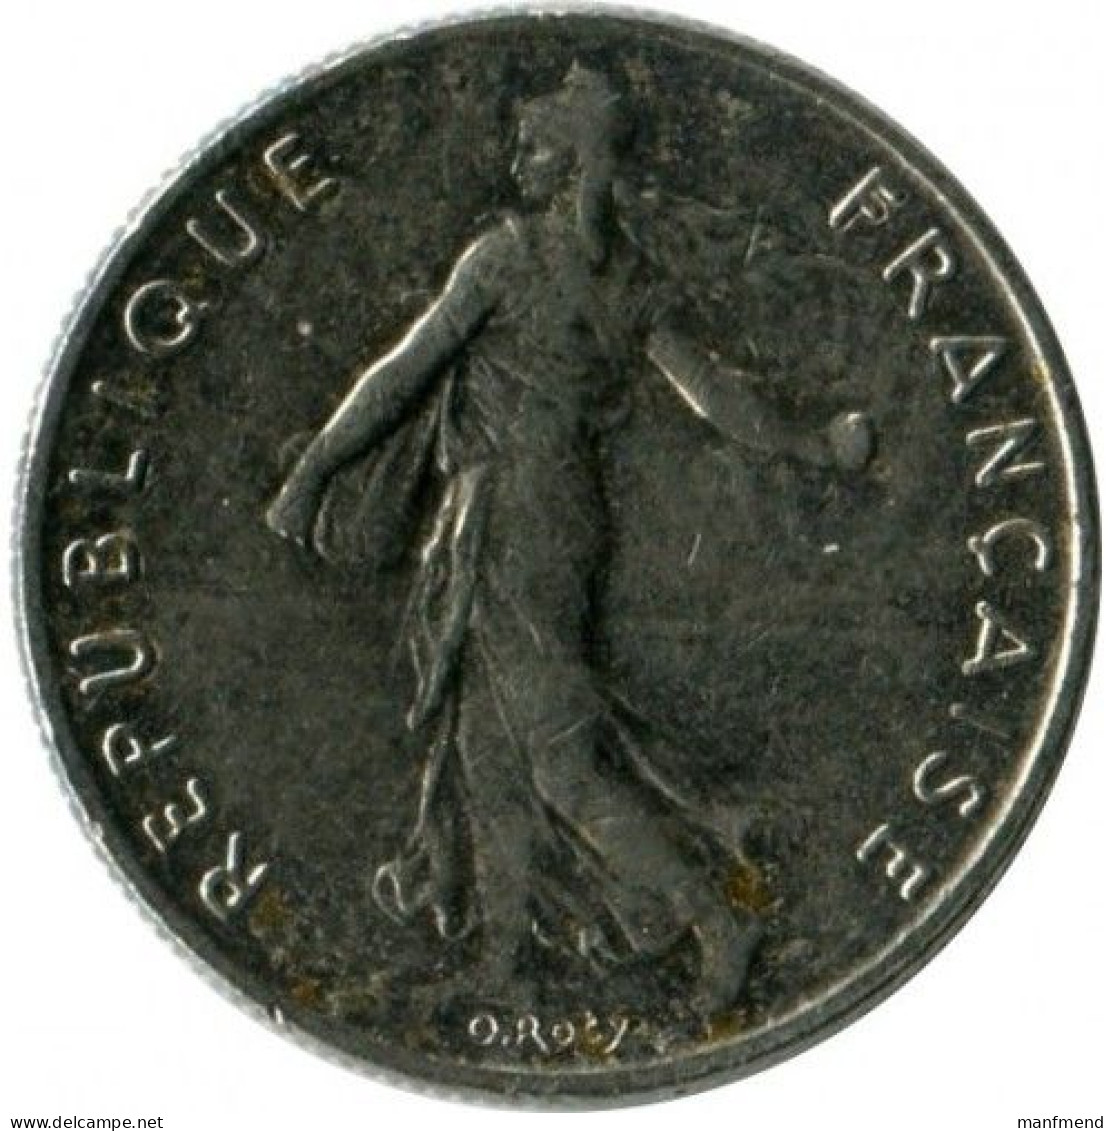 France - 1987 - KM 931 - 1/2 Franc - XF - 1/2 Franc